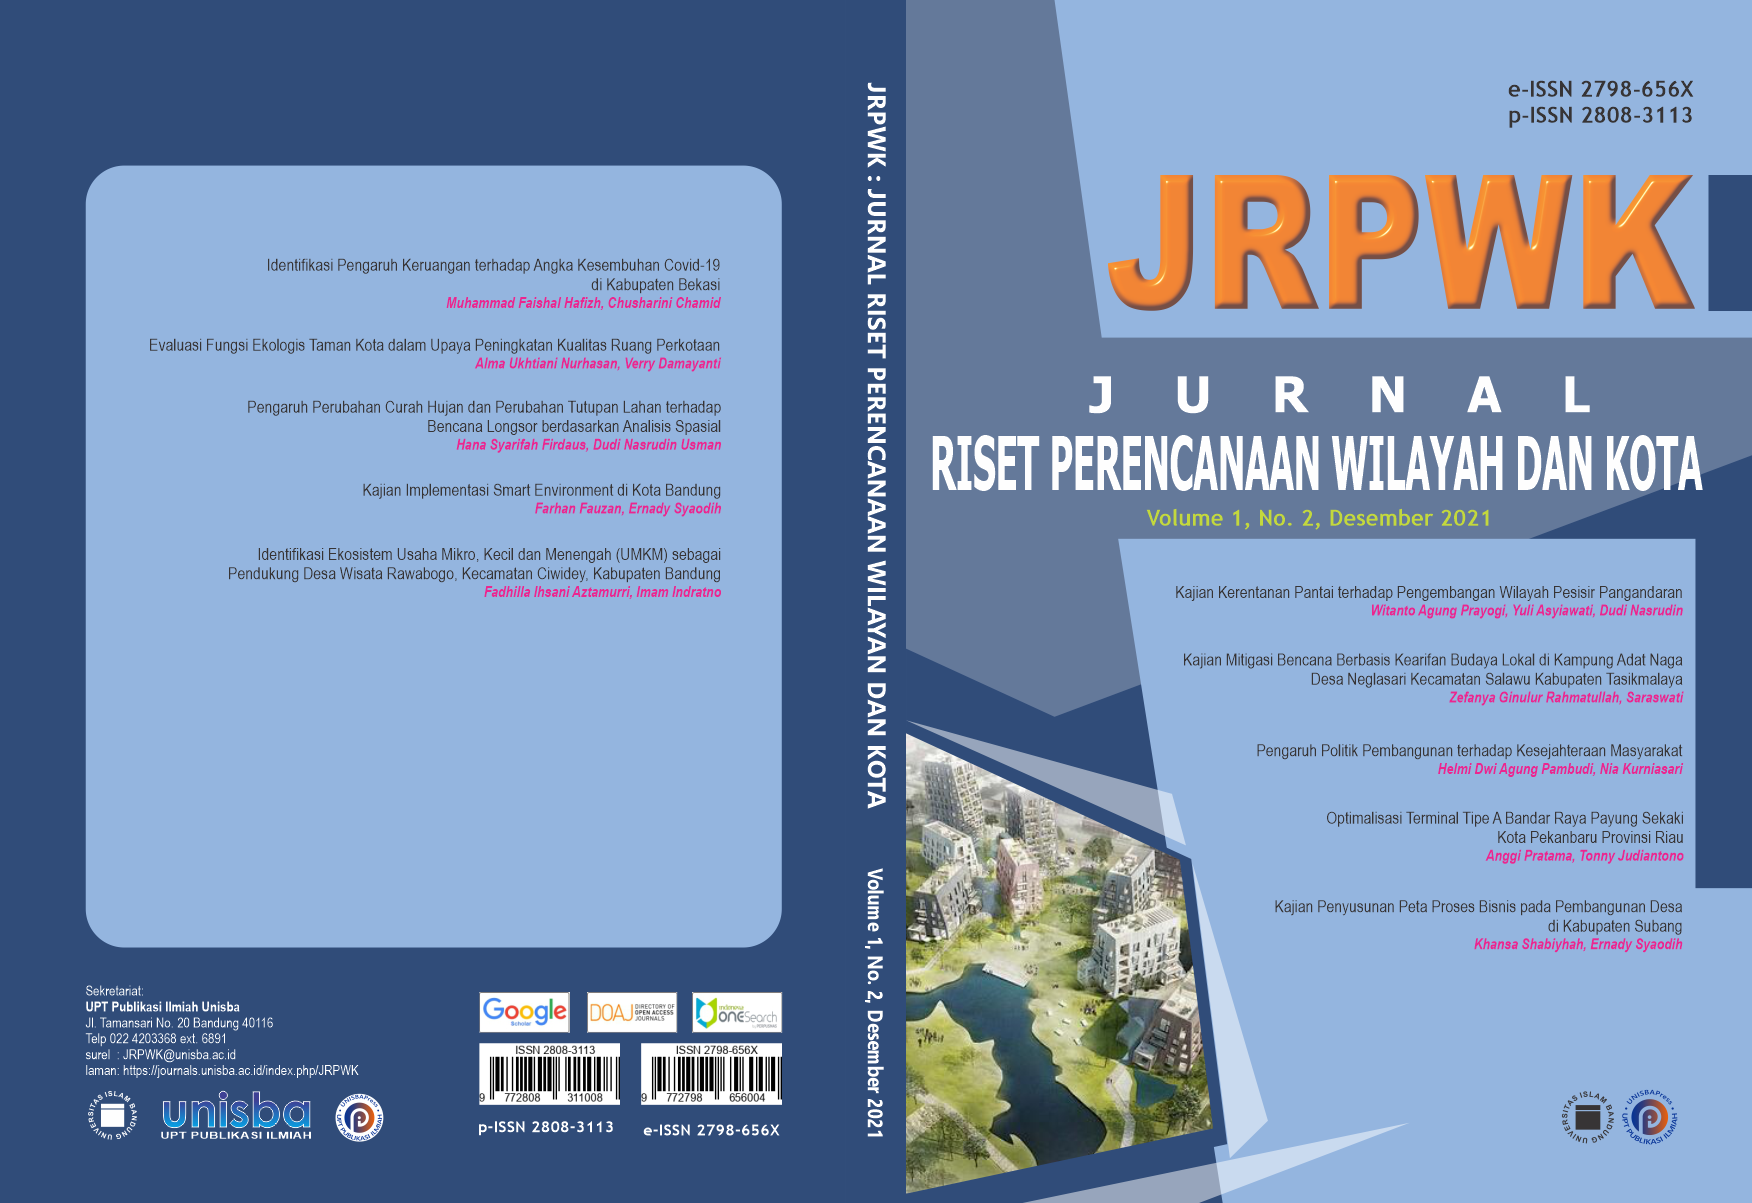 					View Volume 1, No. 2, Desember 2021, Jurnal Riset Perencanaan Wilayah dan Kota (JRPWK)
				